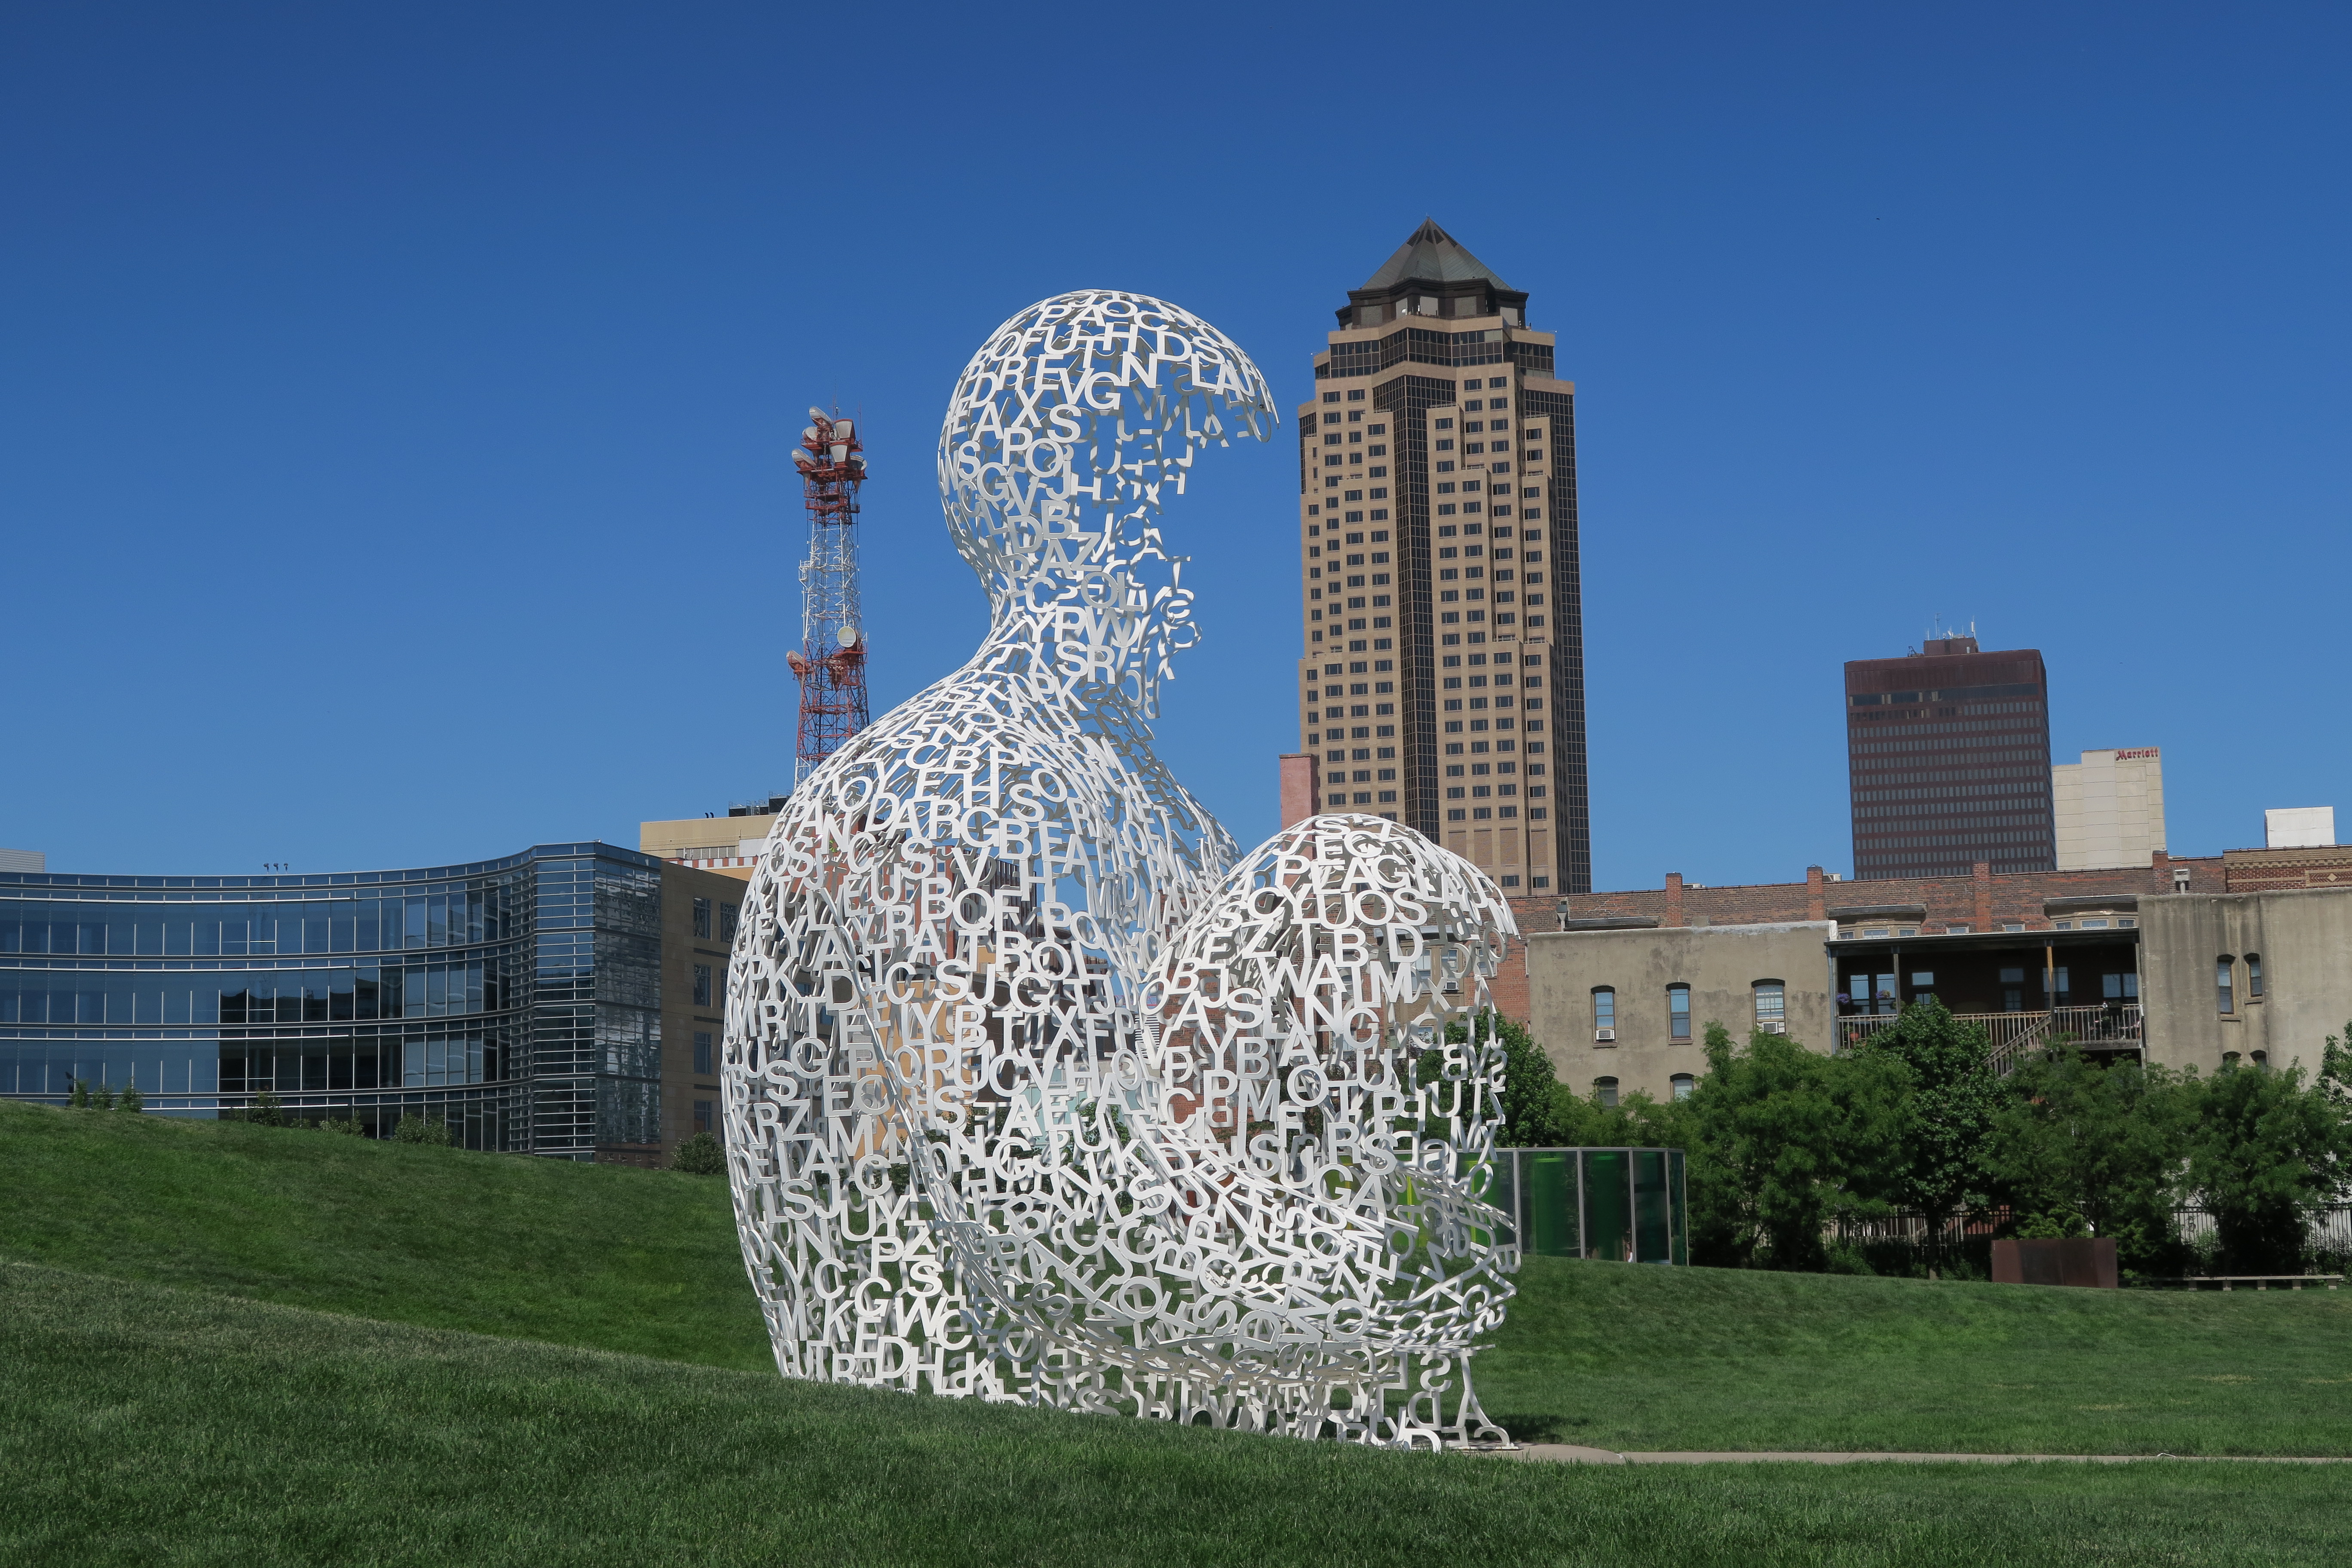 Sculpture park Des Moines